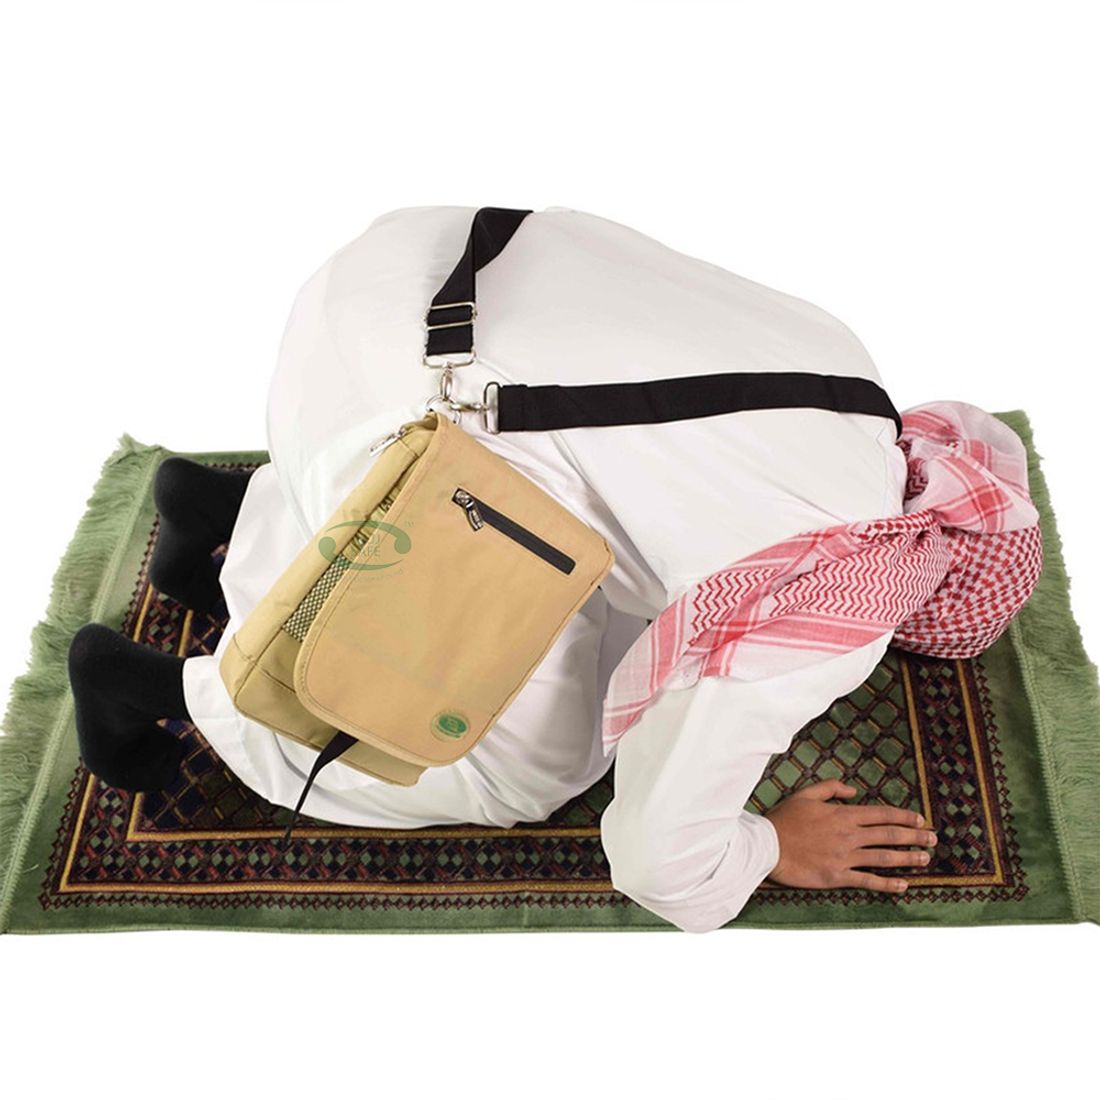 Hajj Safe™ Hajj & Umrah – Side and Backpack [Anti-theft & Secure]